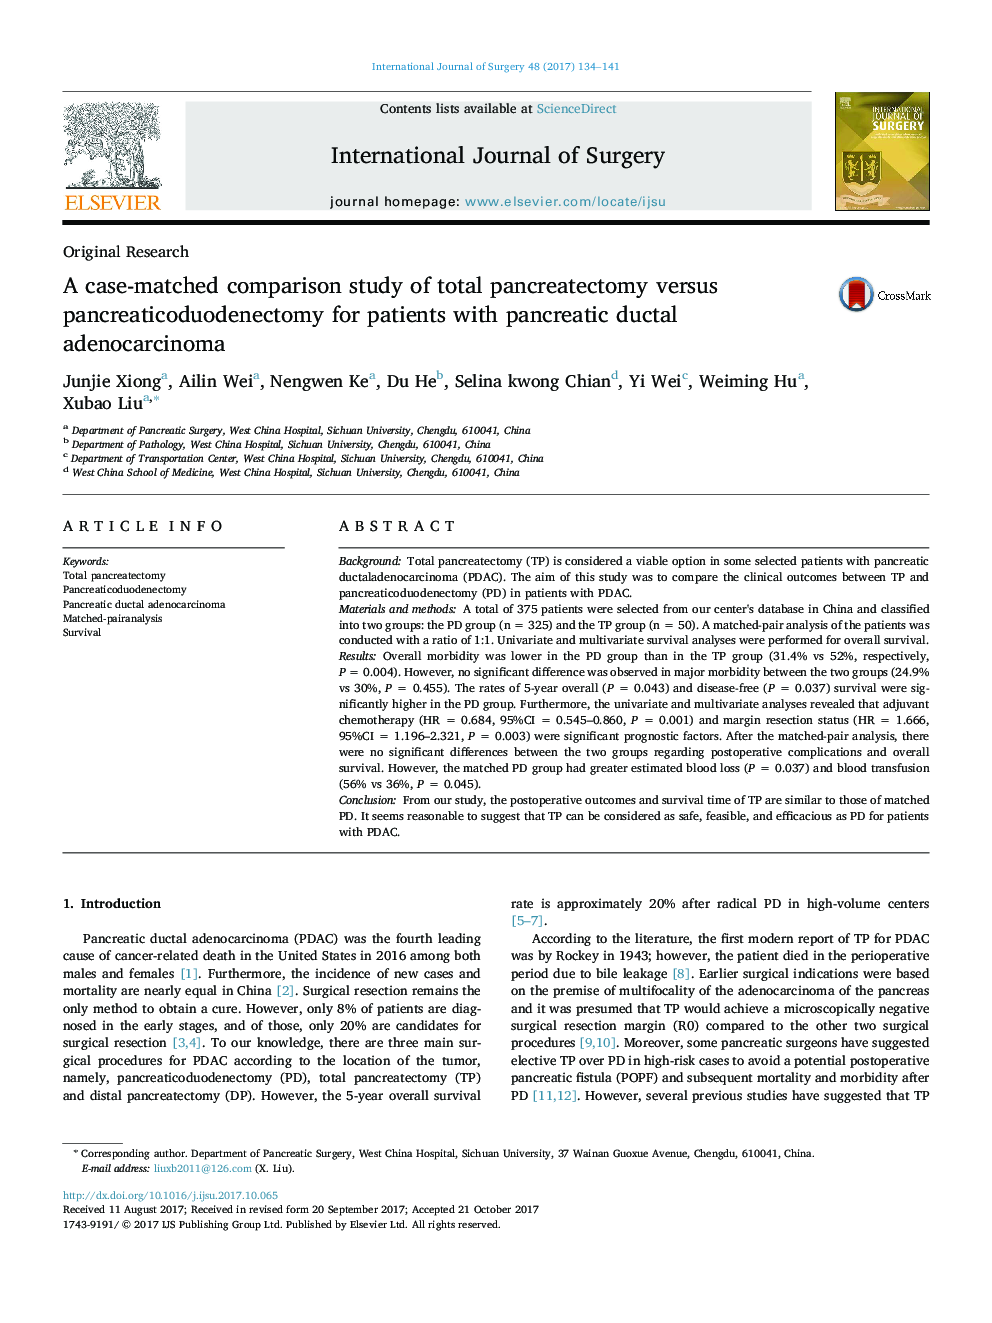 مطالعه مقایسه ای مورد مقایسه کل پانکراتکتومی با پانکراس کاتدی دیوژنکتومی برای بیماران مبتلا به آدنوکارسینوم مدول پانکراس 